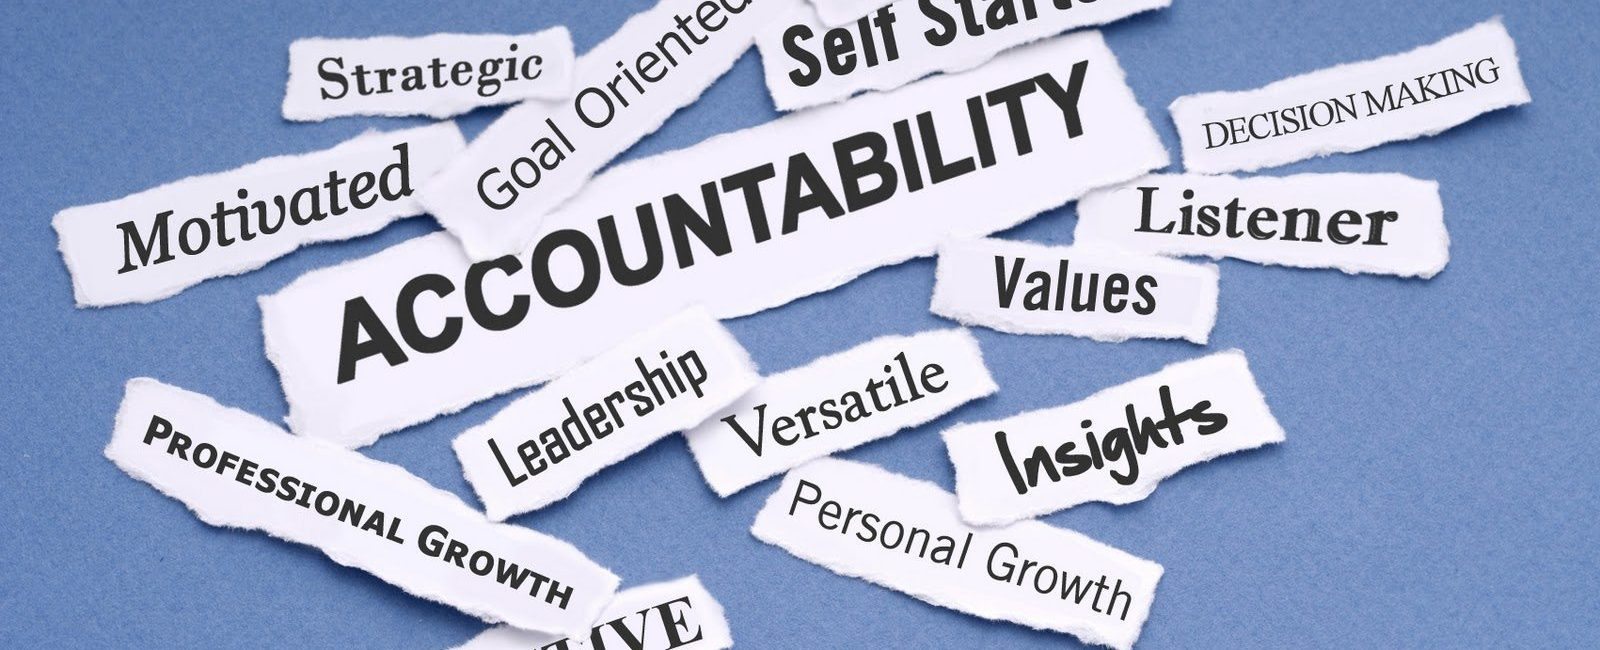 ACCOUNTABILITY: Una Decisión Personal que va más allá de la Responsabilidad